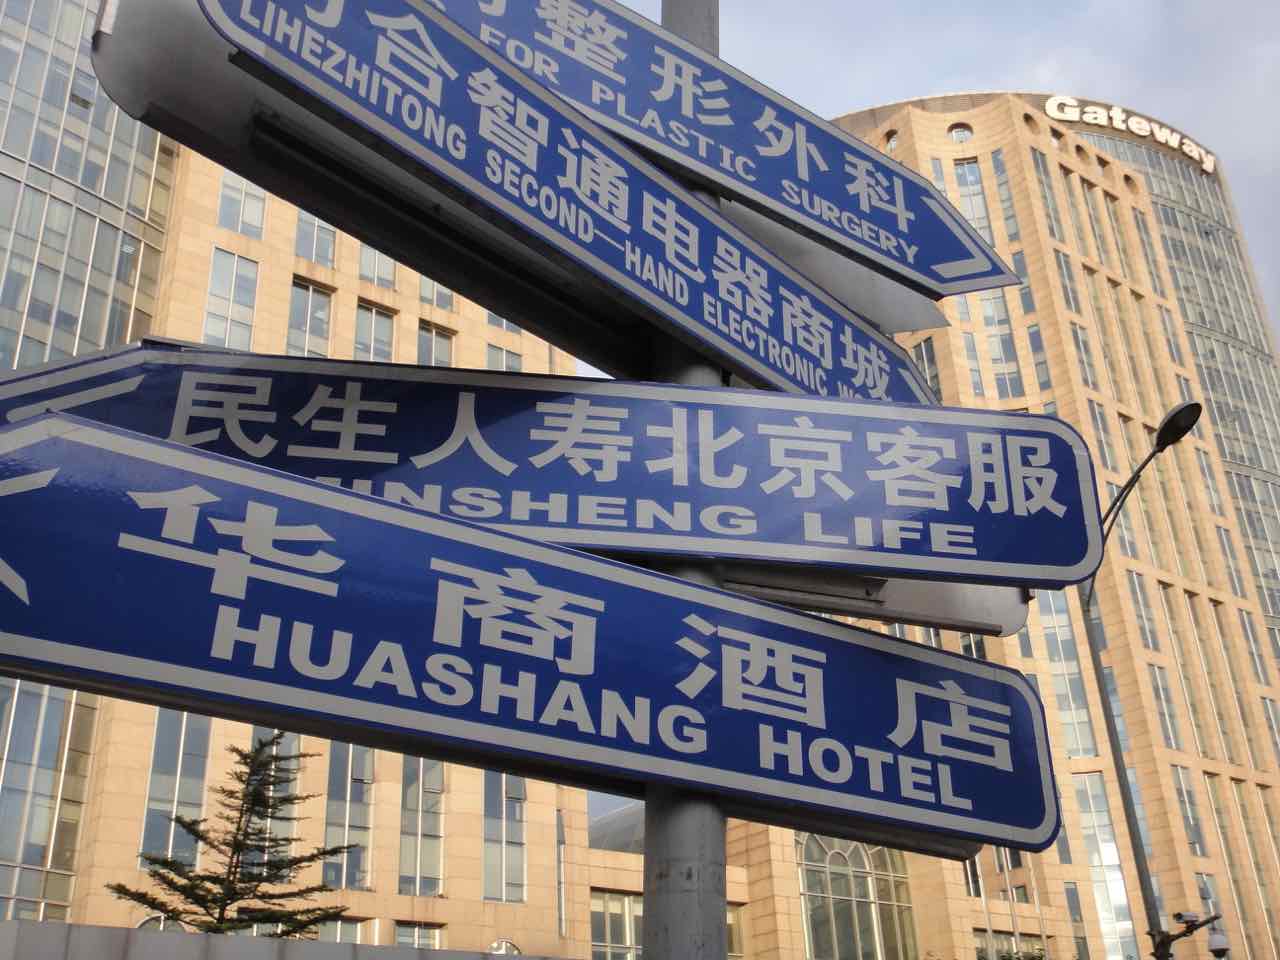 Street directions Beijing